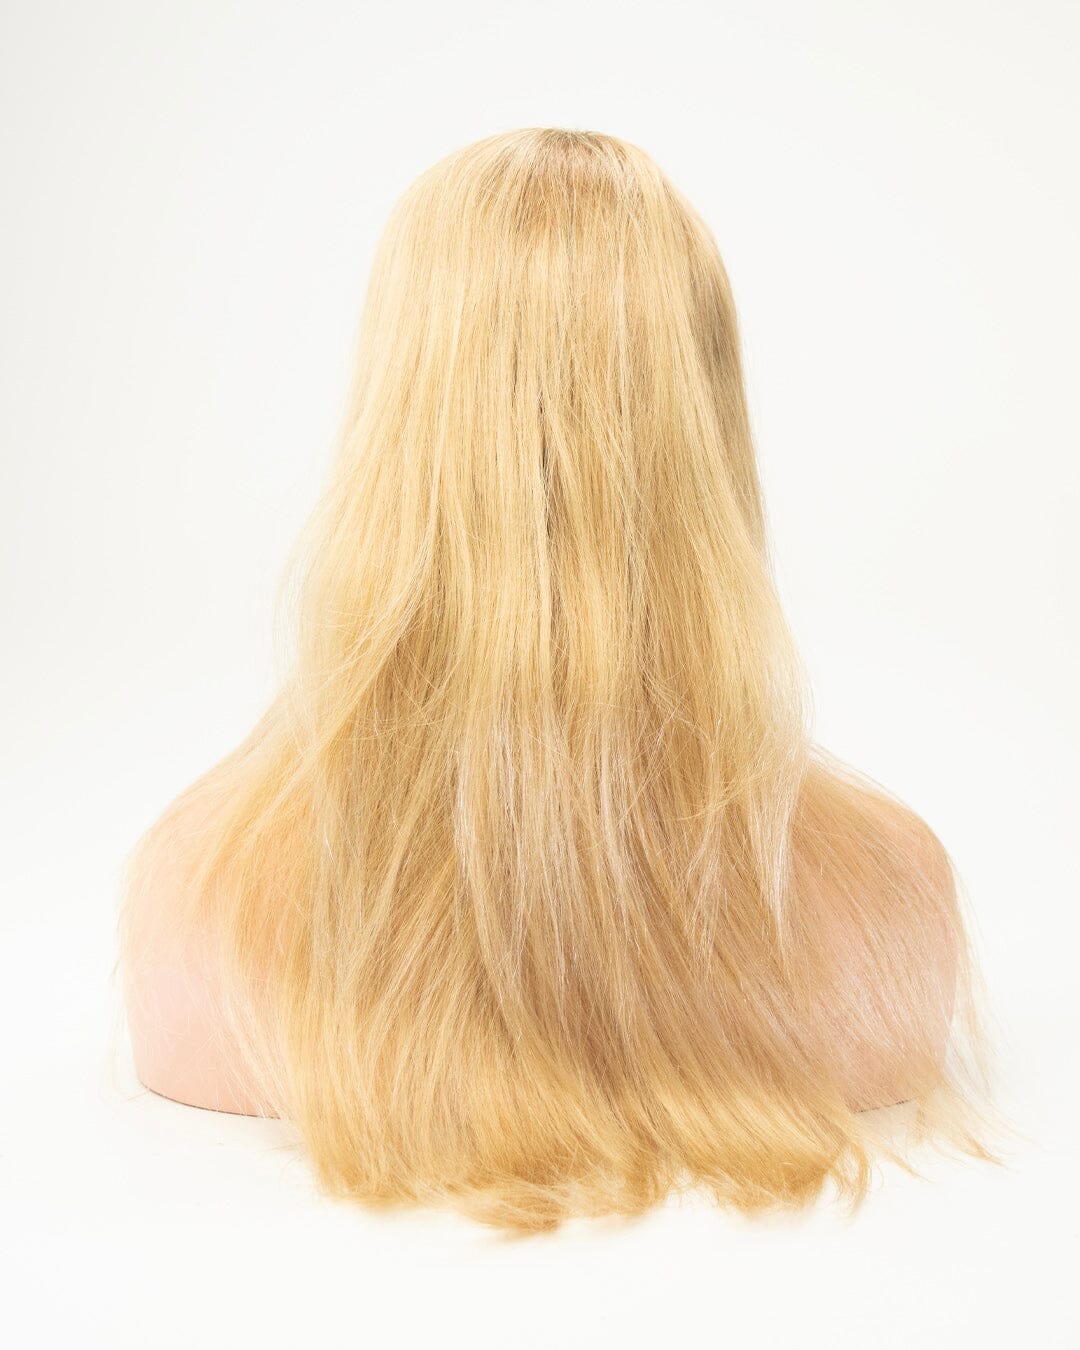 Warm Blonde - Dark Blonde Roots 60cm Human Hair Wig